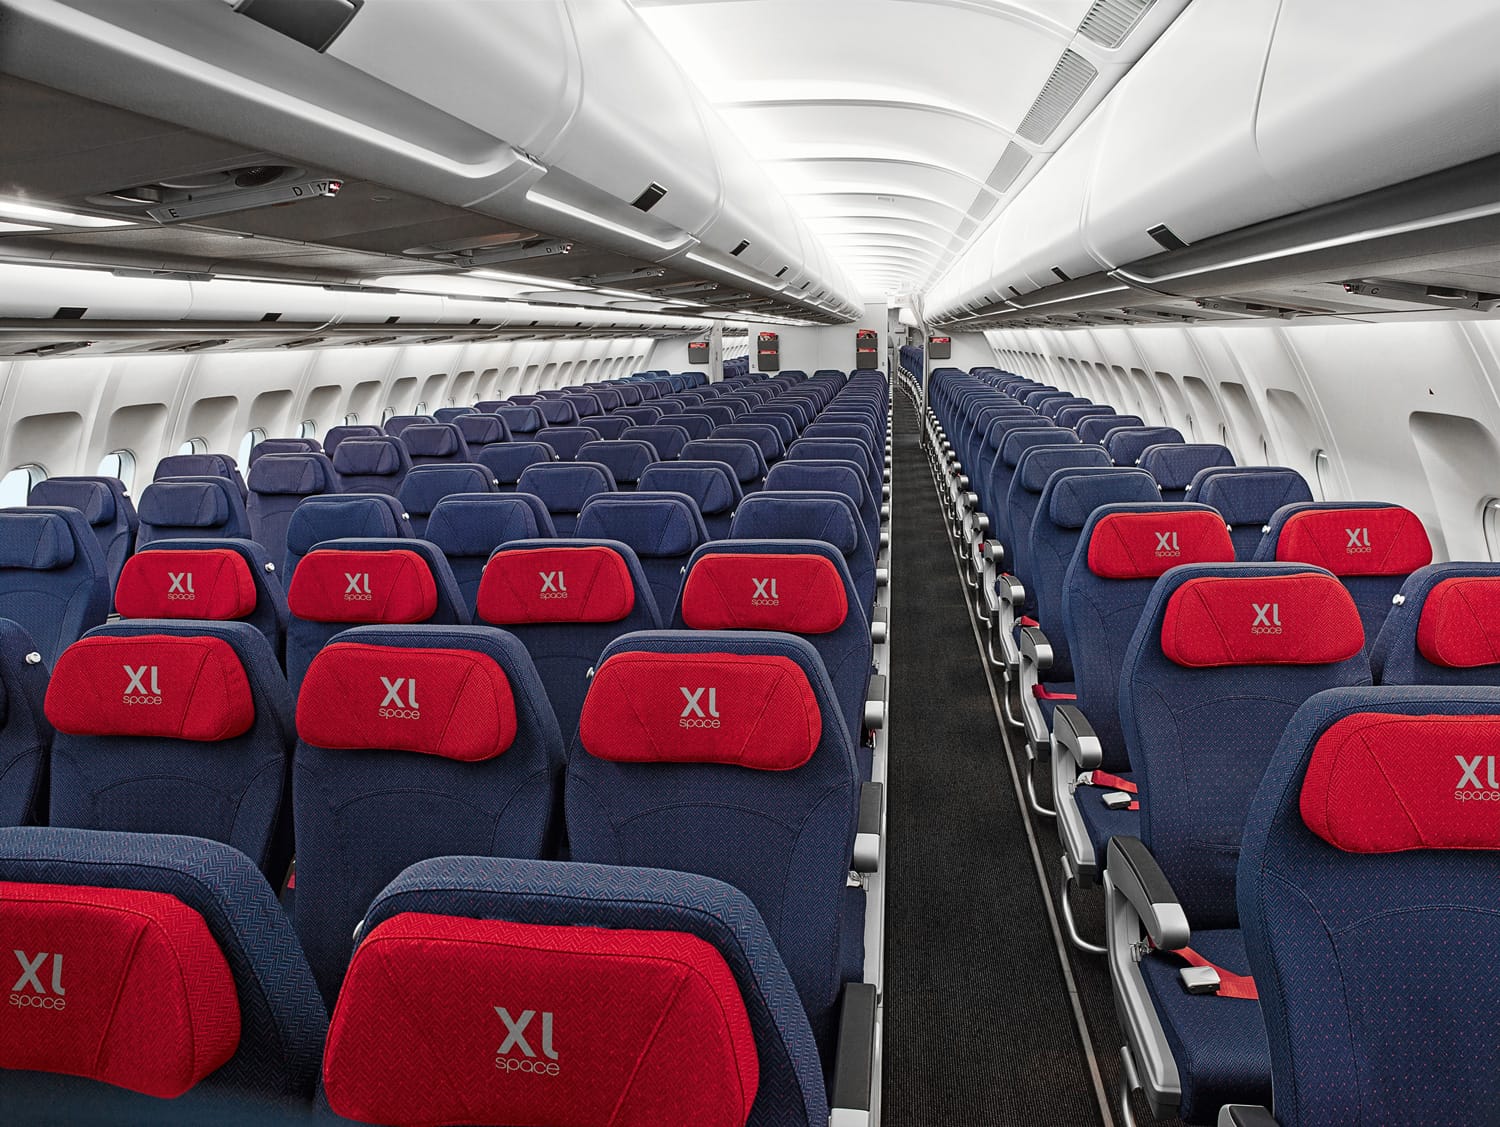 Die XL-Sitze bei Air Berlin sind eine vergleichsweise günstige Methode, mehr Beinfreiheit zu haben. Sie kosten je nach Strecke zwischen 19 bis 84 Euro Aufschlag pro Strecke.